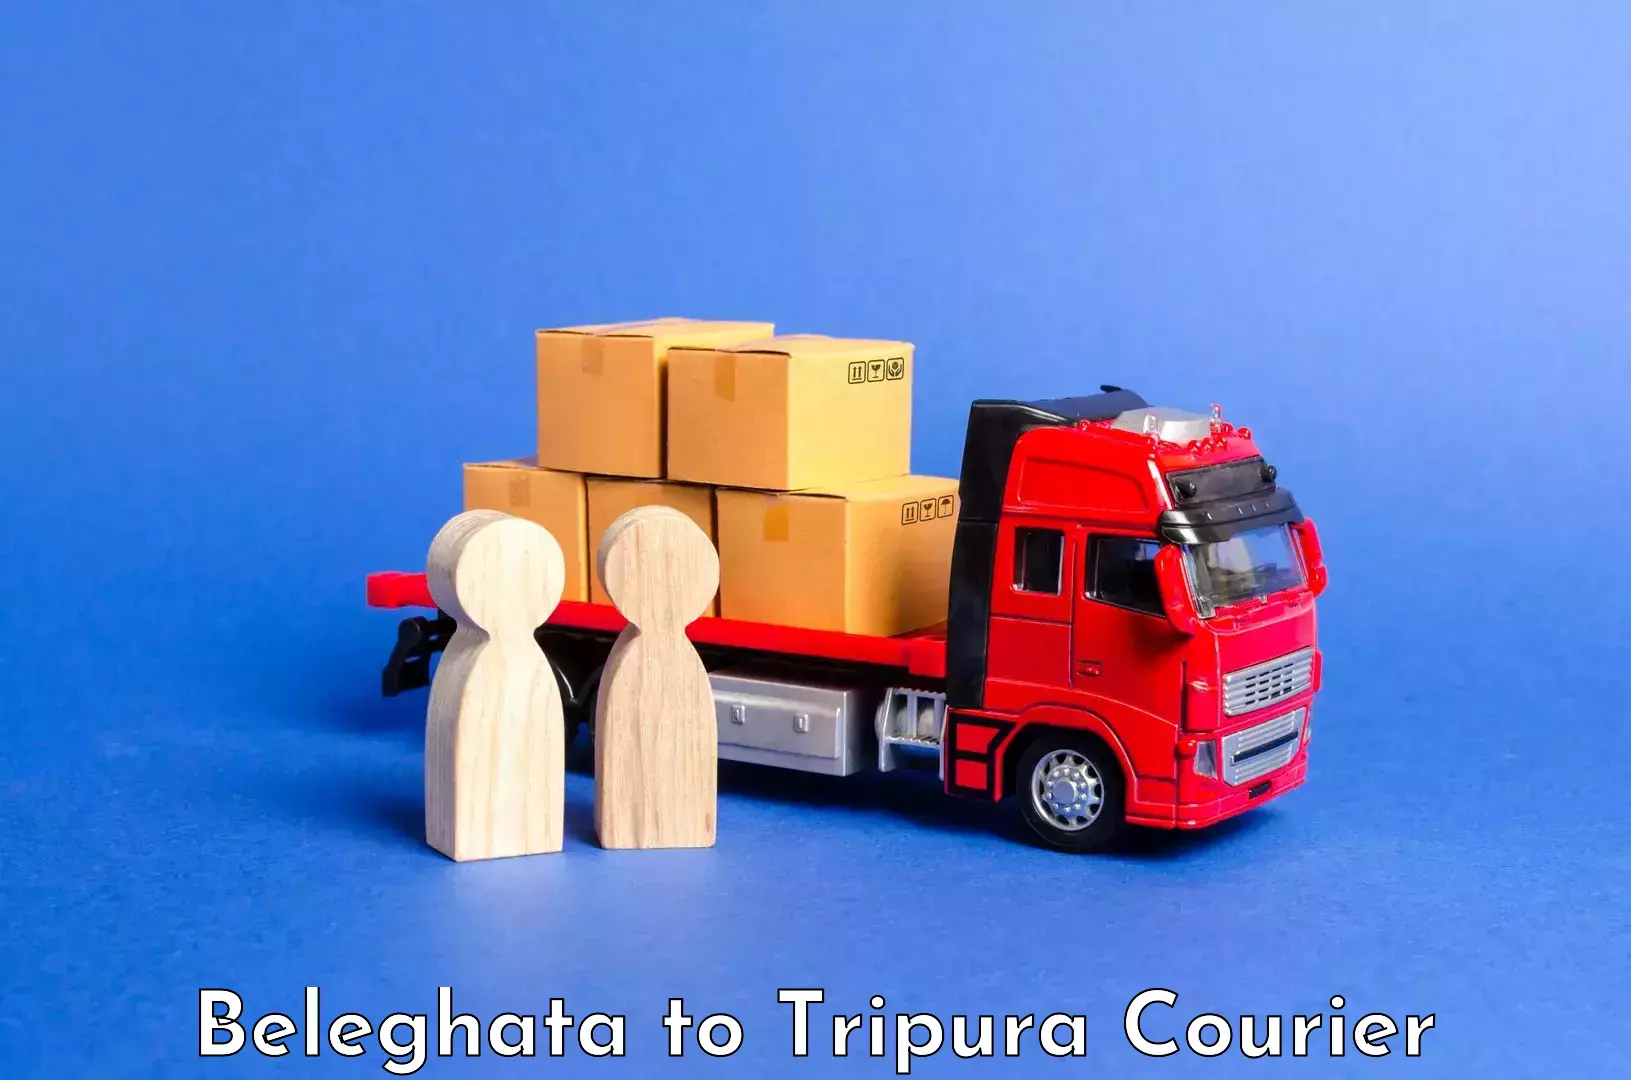 Automated luggage transport Beleghata to Udaipur Tripura